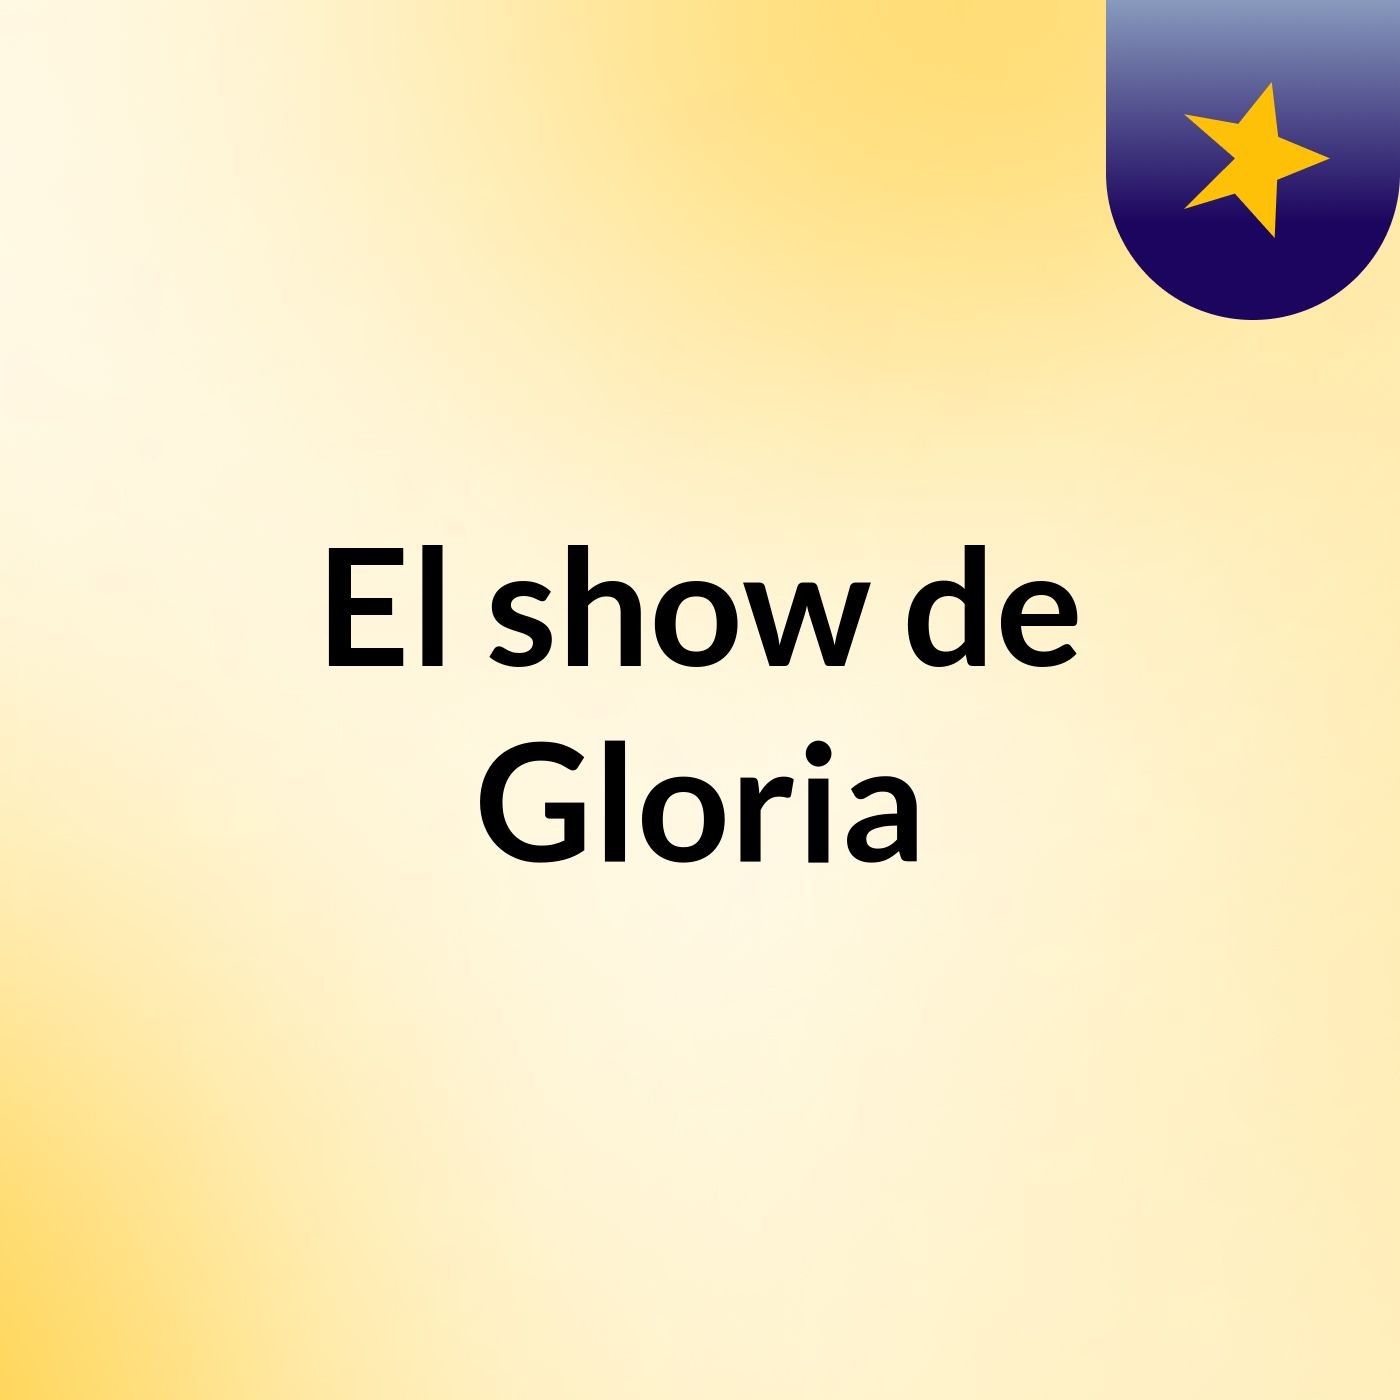 El show de Gloria